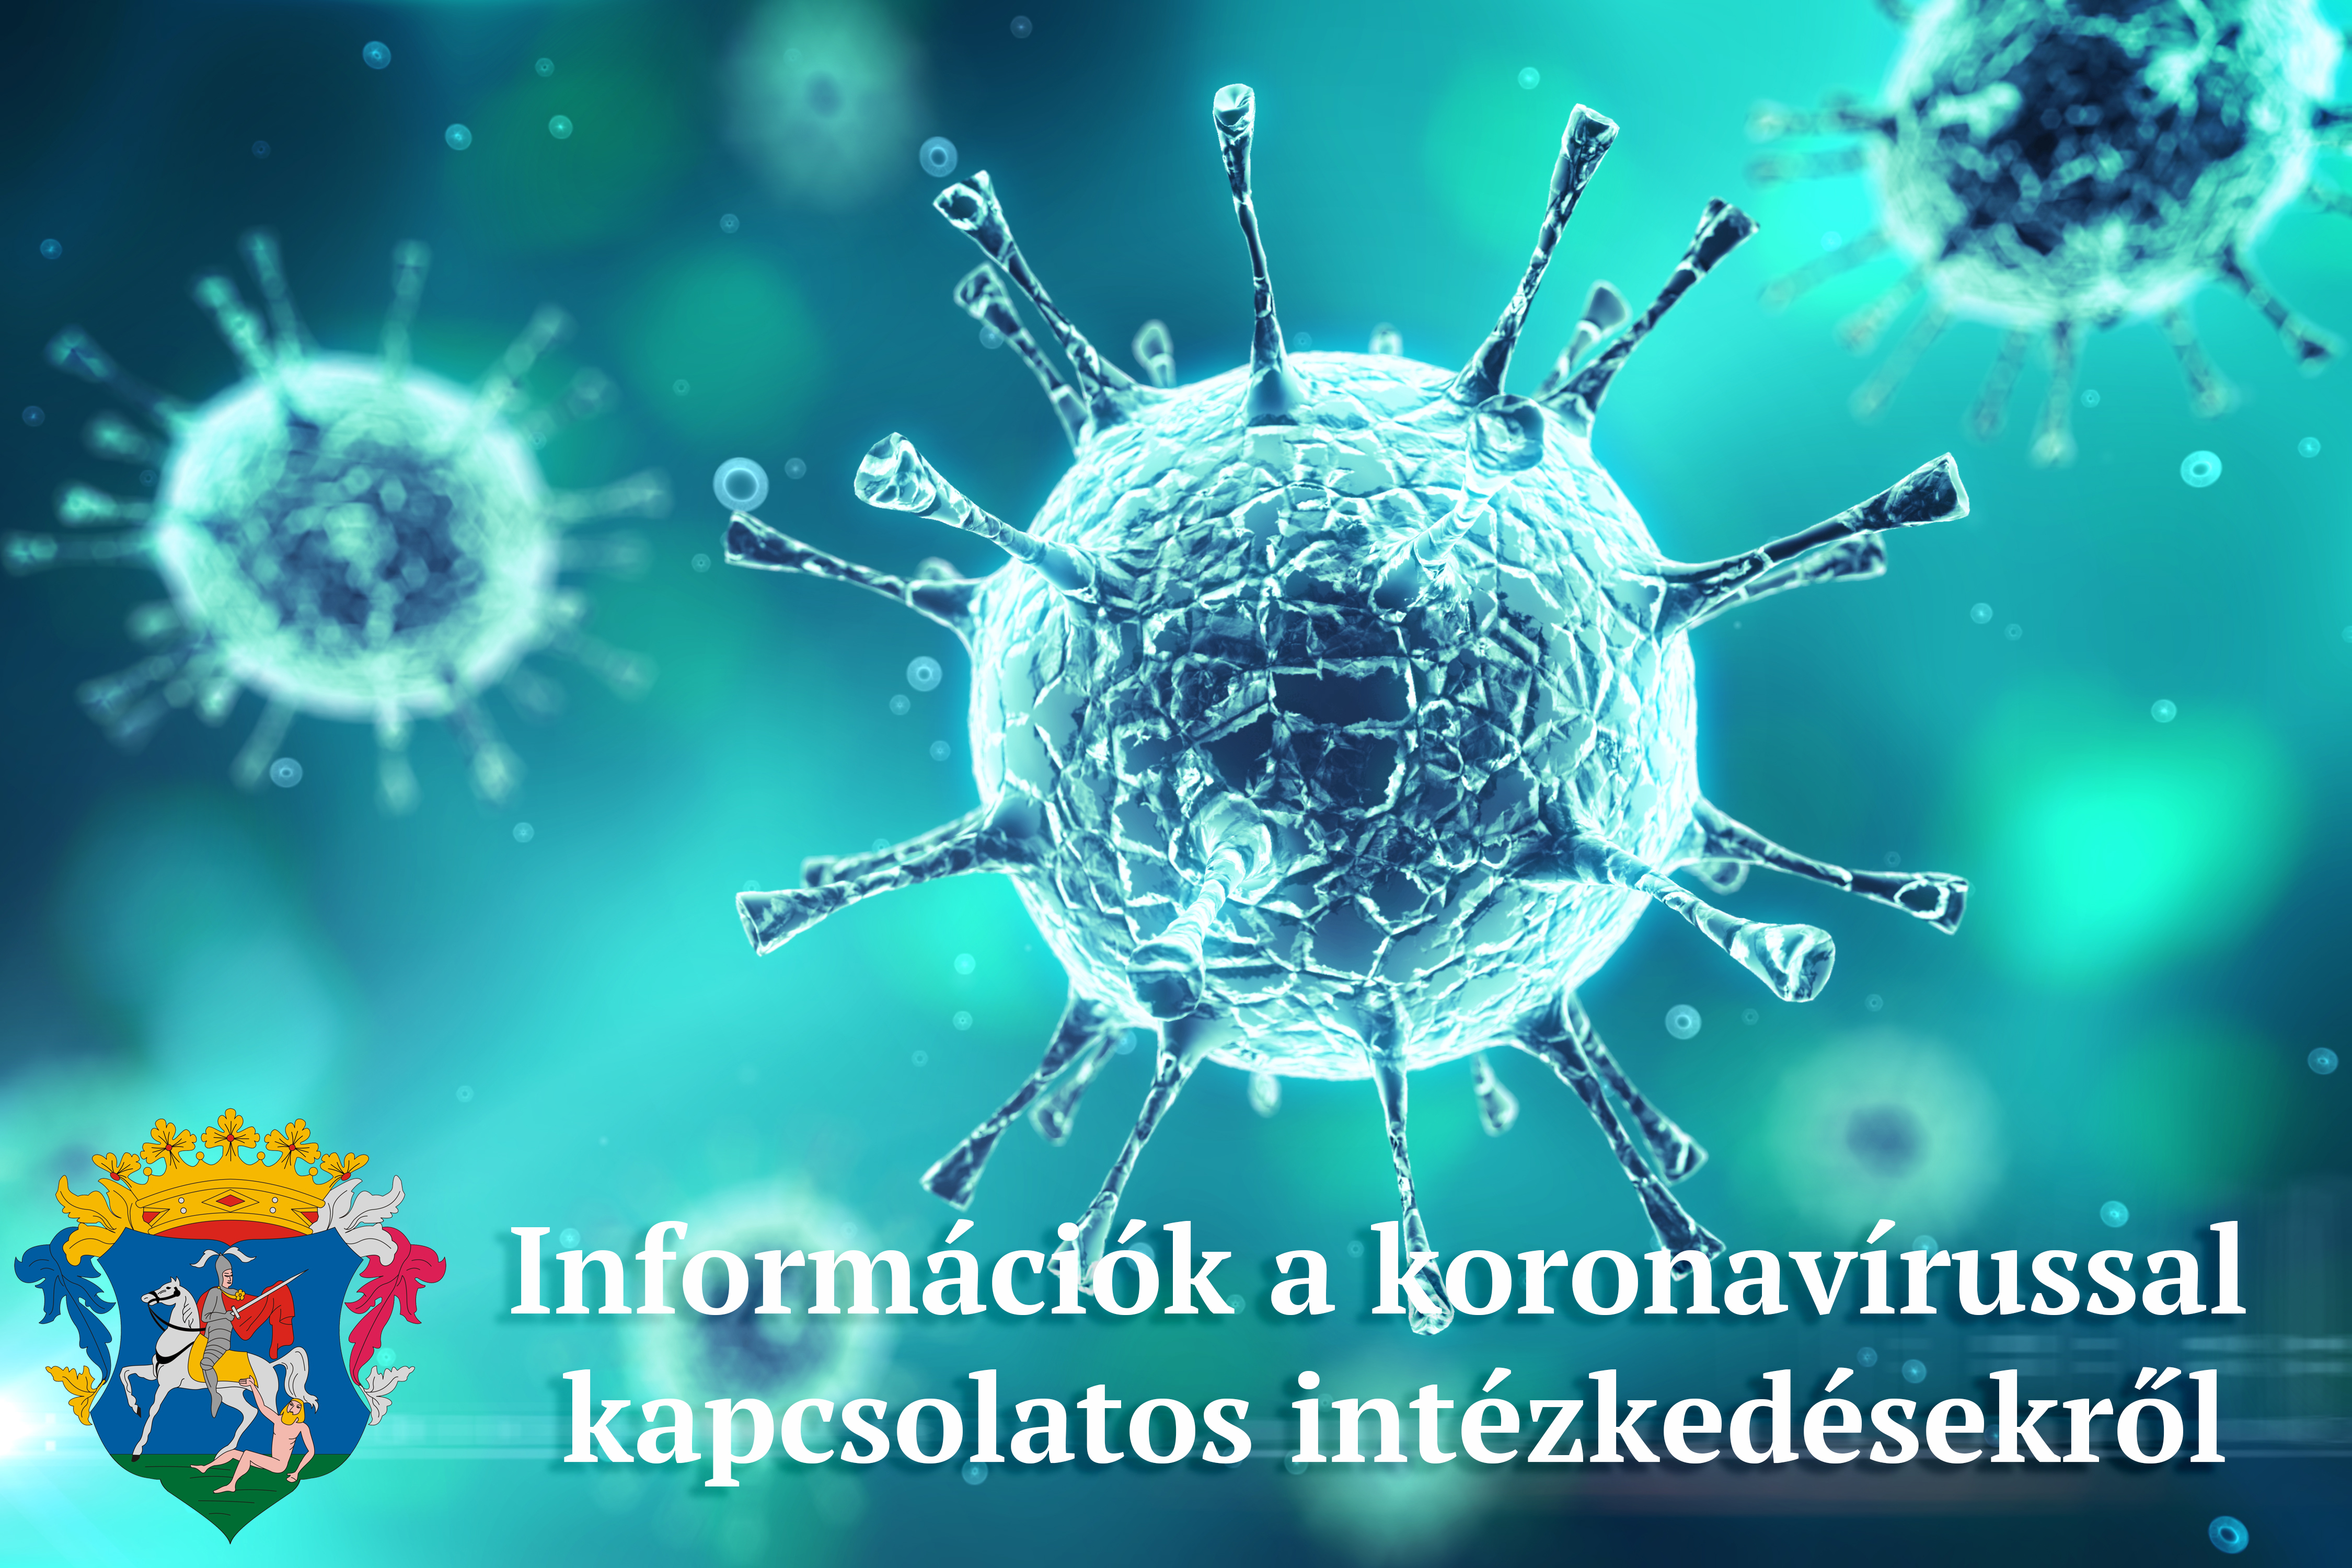 Információk a koronavírussal kapcsolatos intézkedésekről, döntésekről 